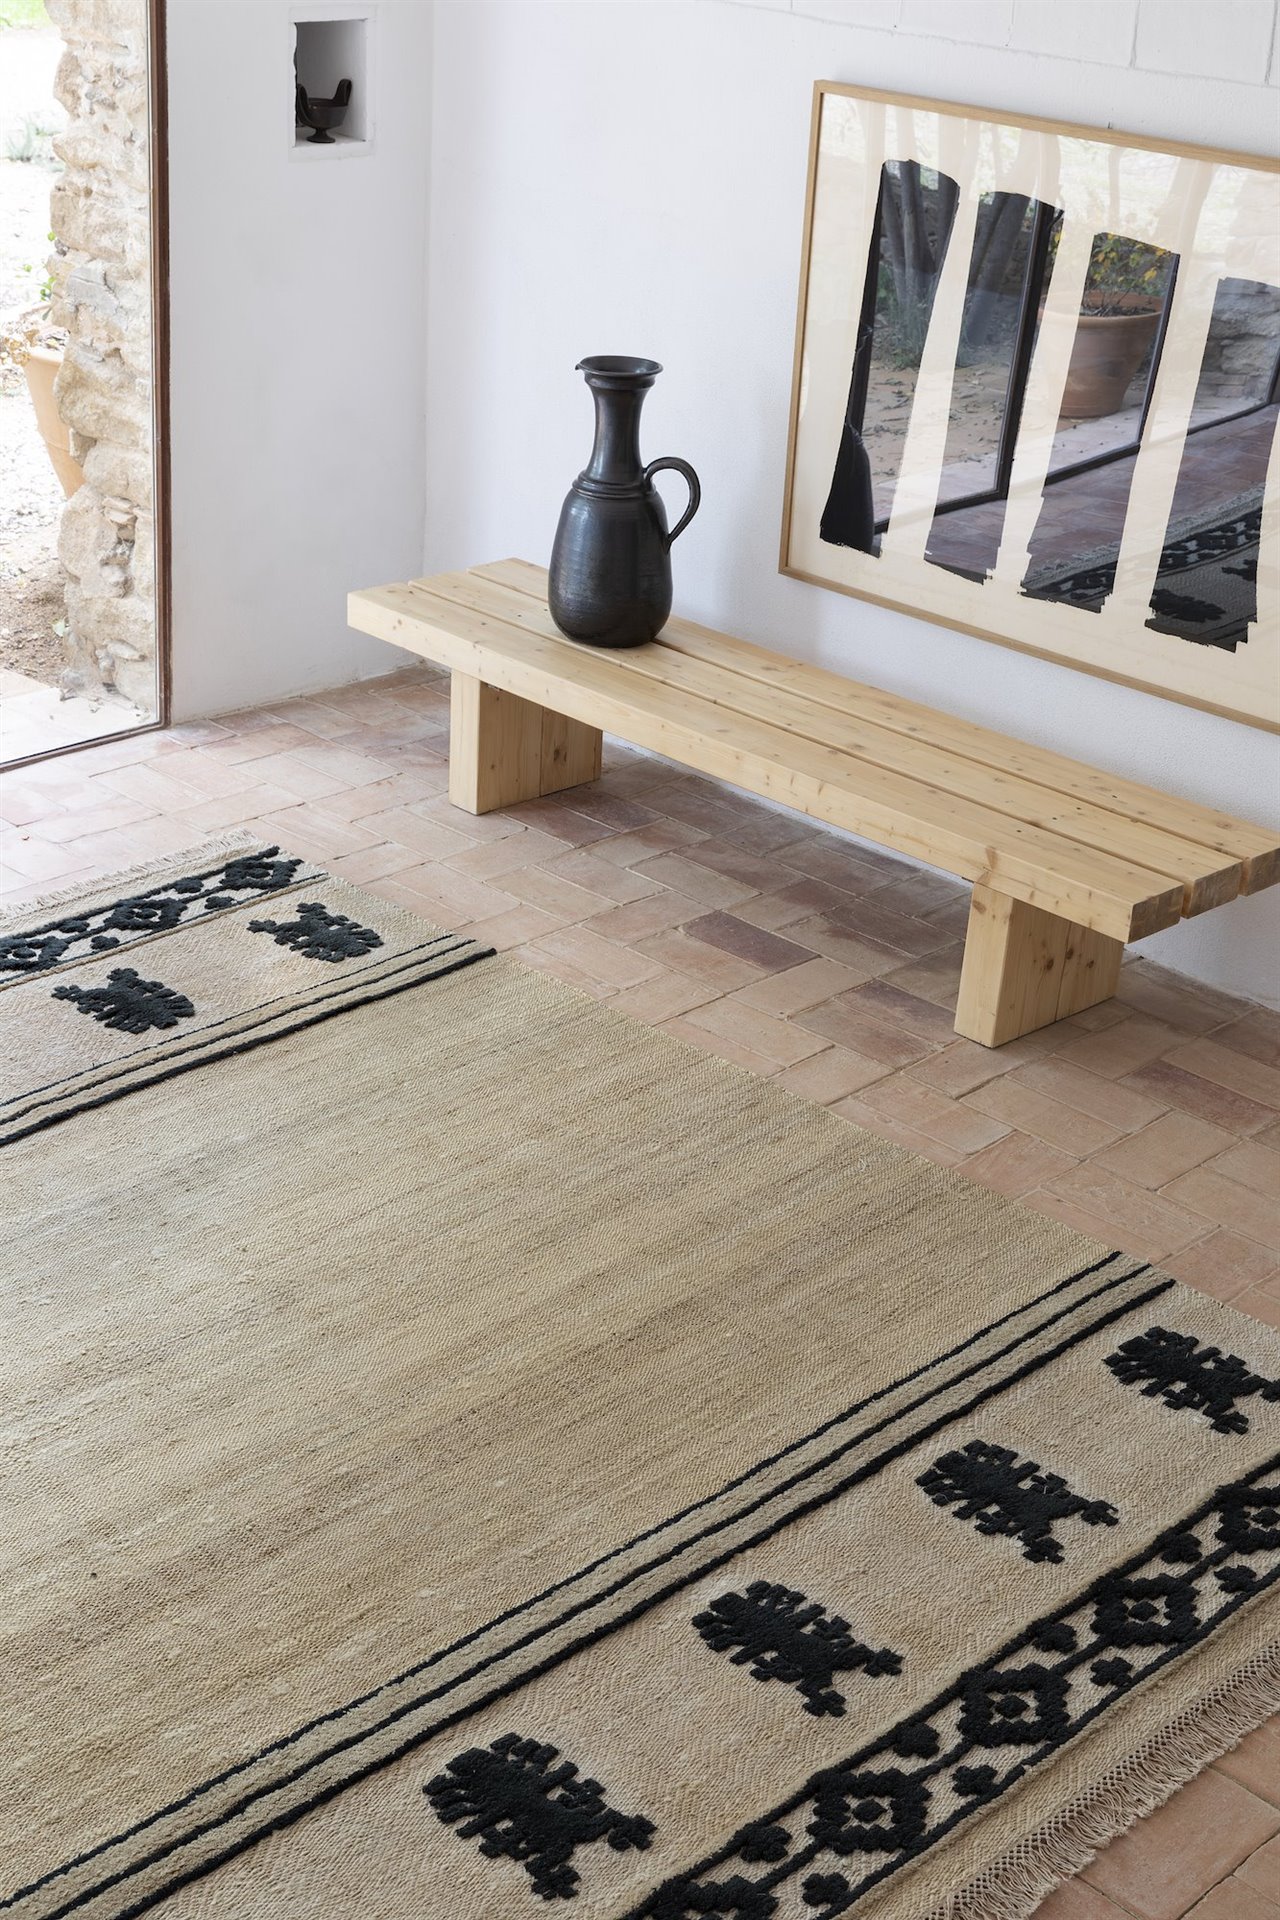 Las tres alfombras de la colección están tejidas de forma artesanal y realizadas en materiales naturales como la lana y el yute. 